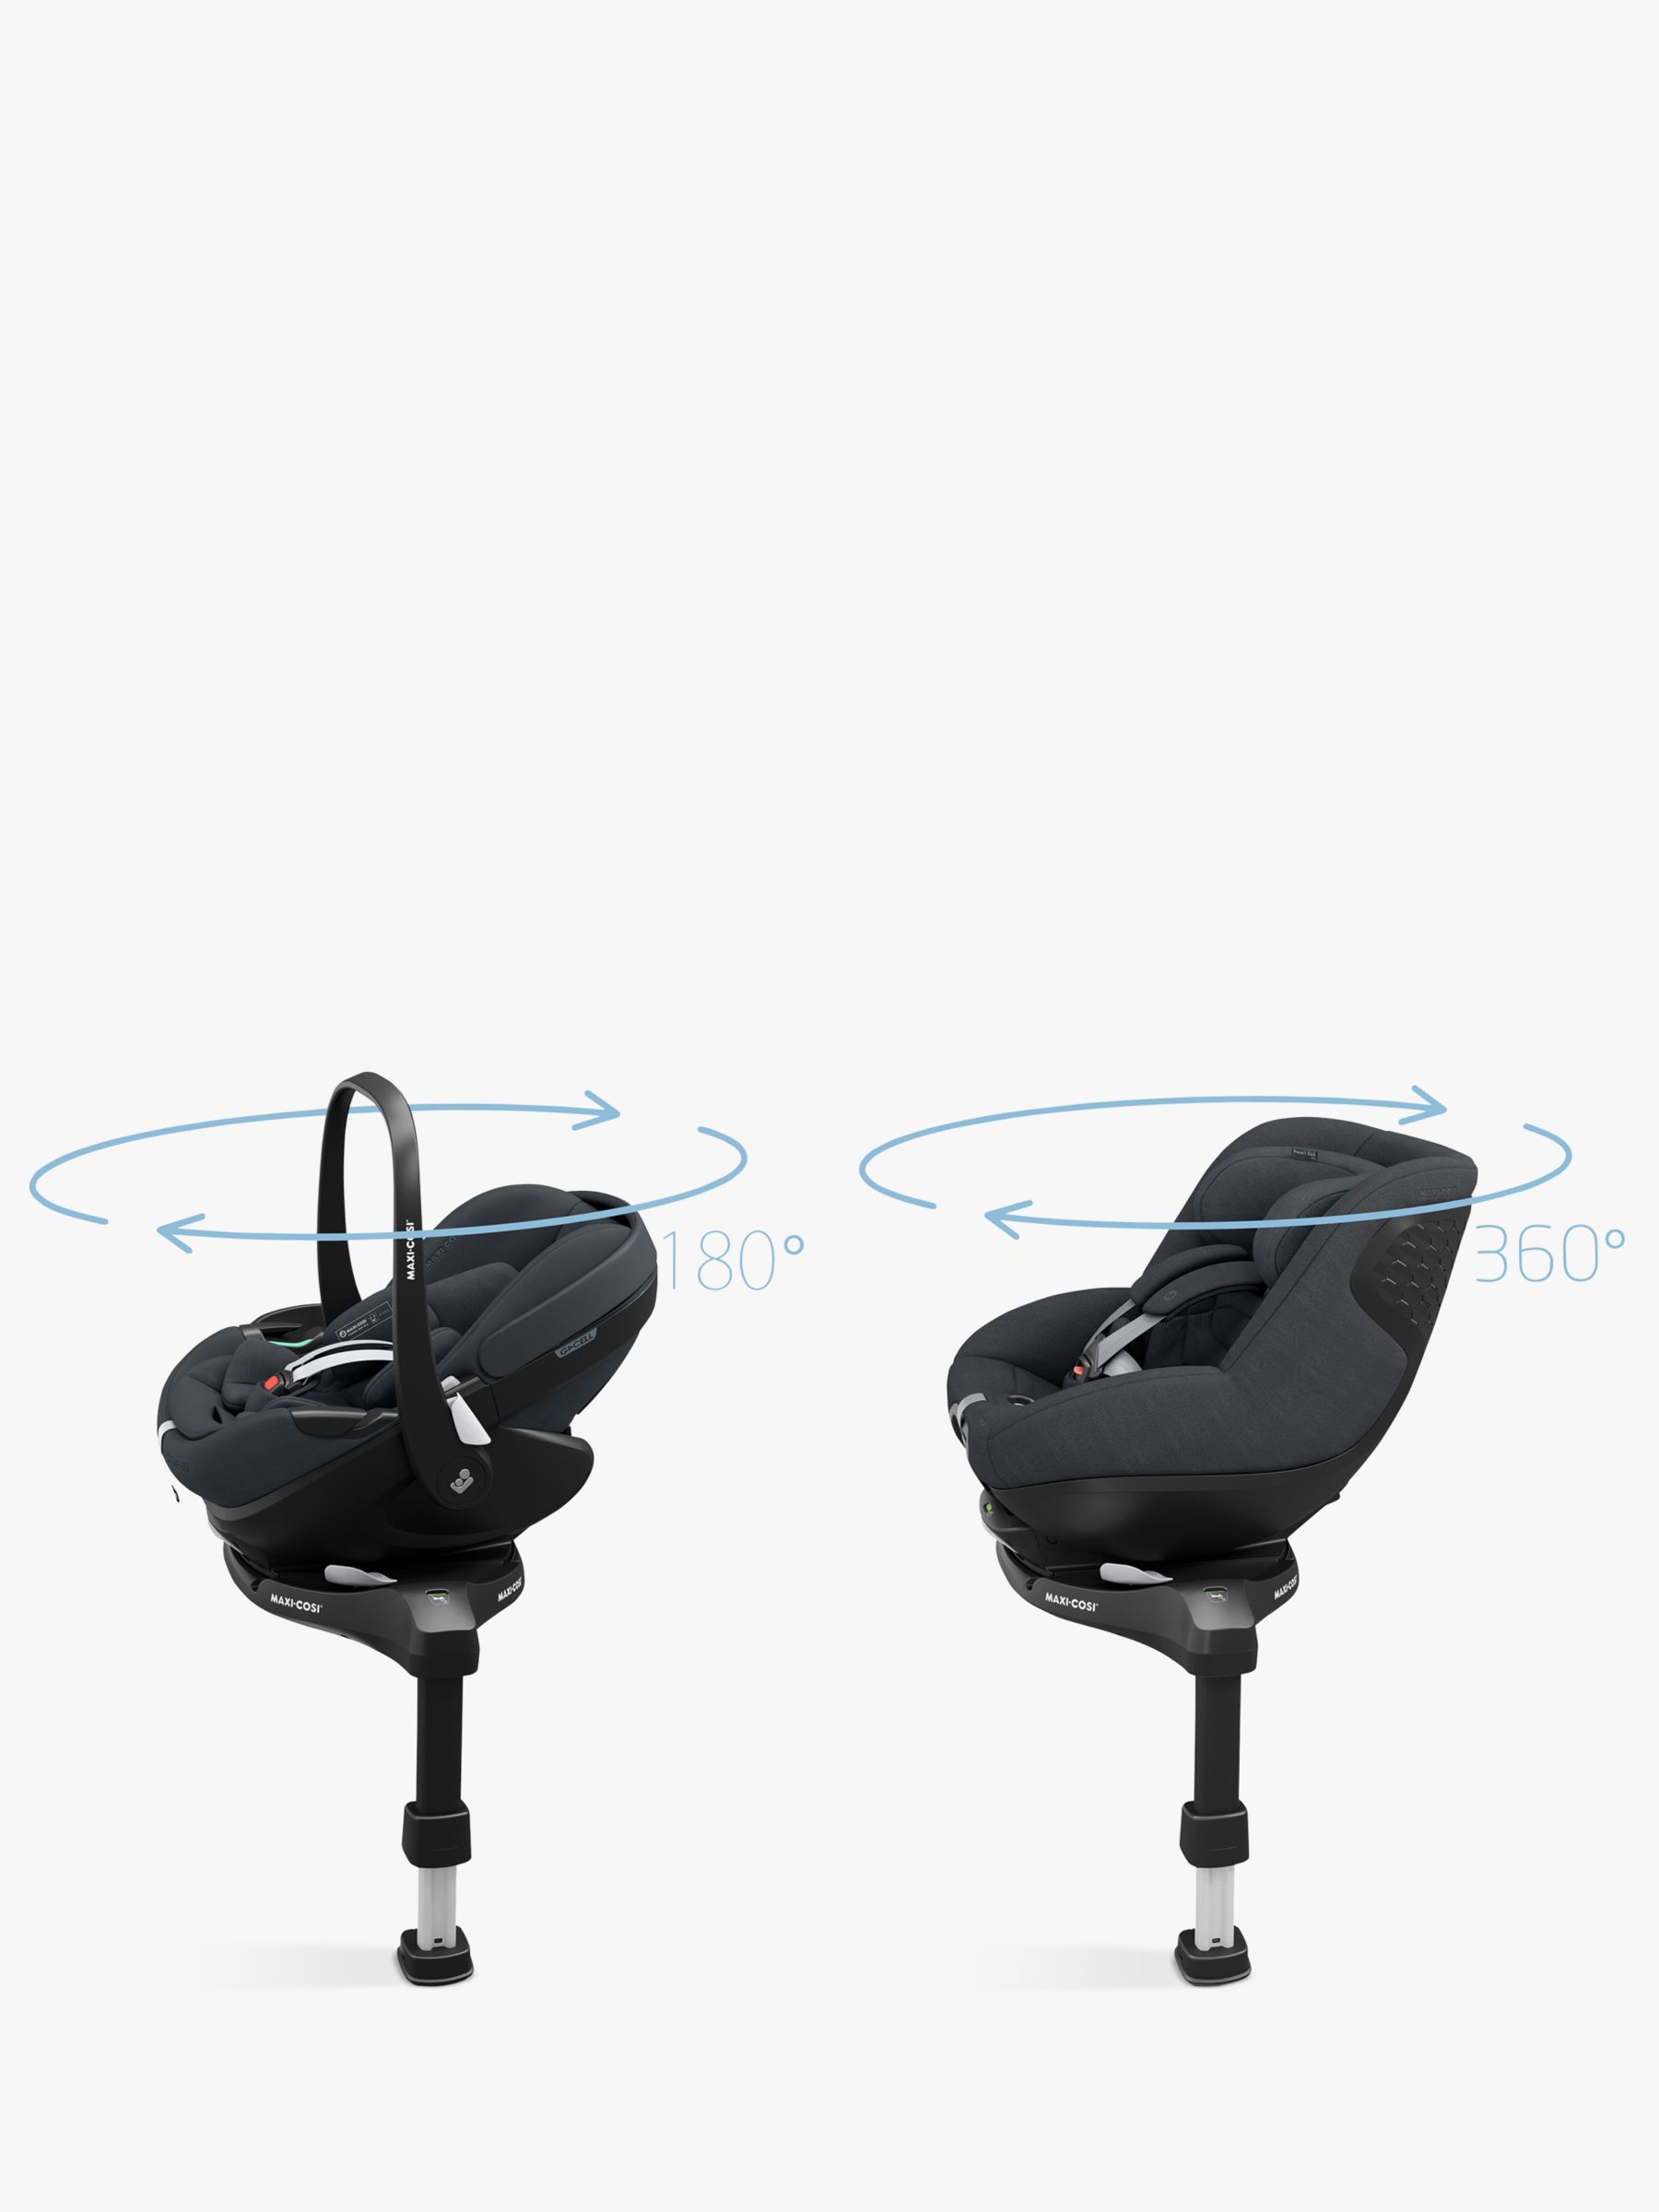 iCandy Orange 4 Pushchair with Maxi-Cosi Pebble 360 Pro i-Size Car Seat and FamilyFix 360 Pro Base Bundle, Black